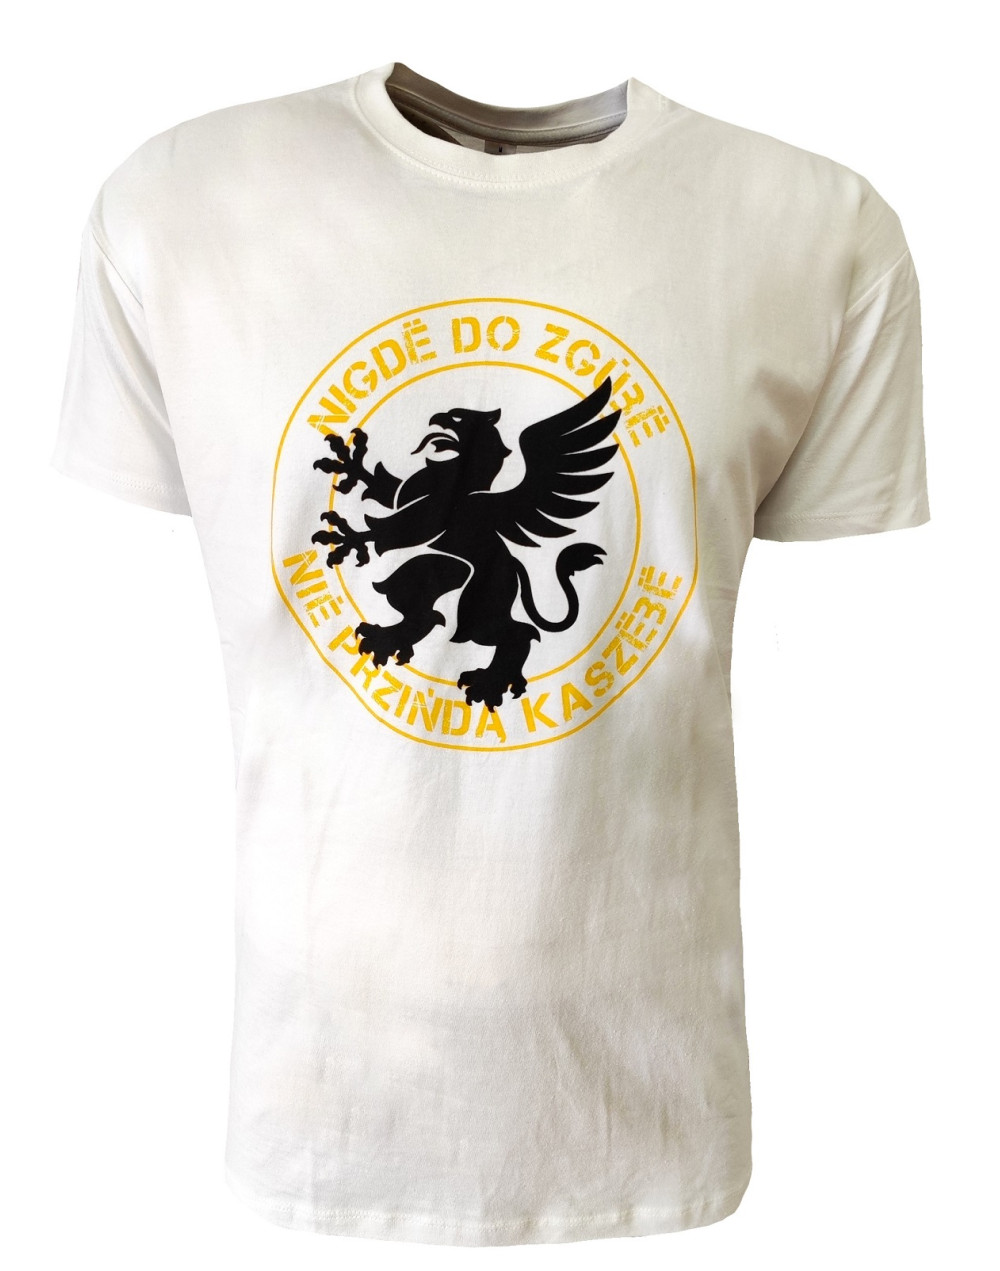 T-shirt męski KASZEBE BIAŁY koszulka bawełna M-XXL